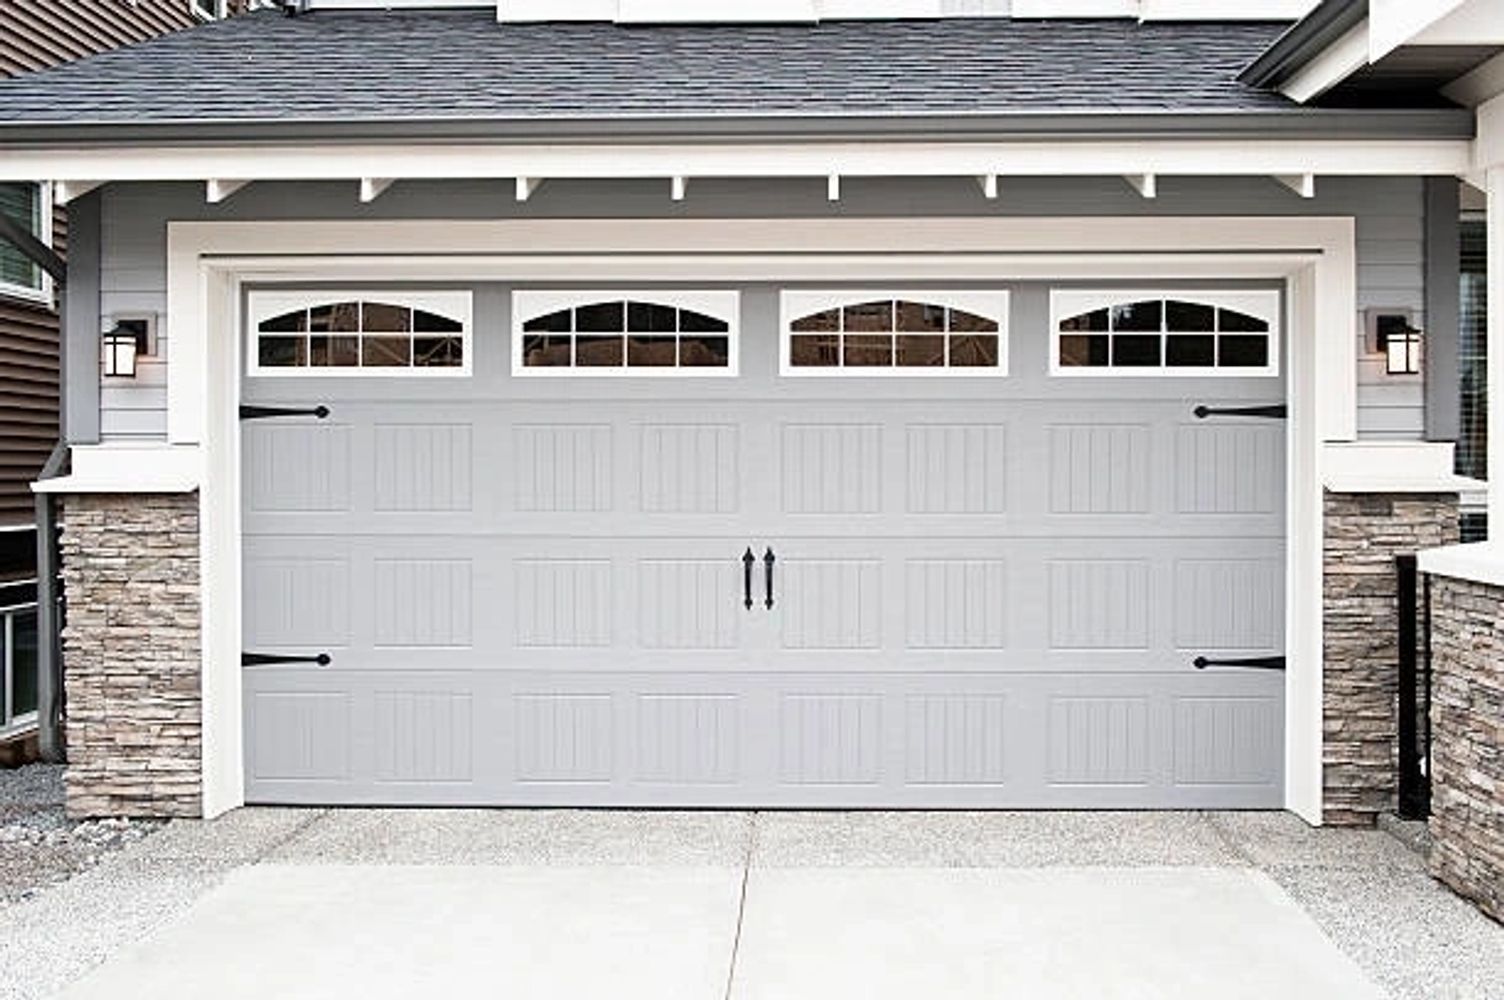 Garage Door Repair Service, Garage Door Installation, Garage Door Replacement